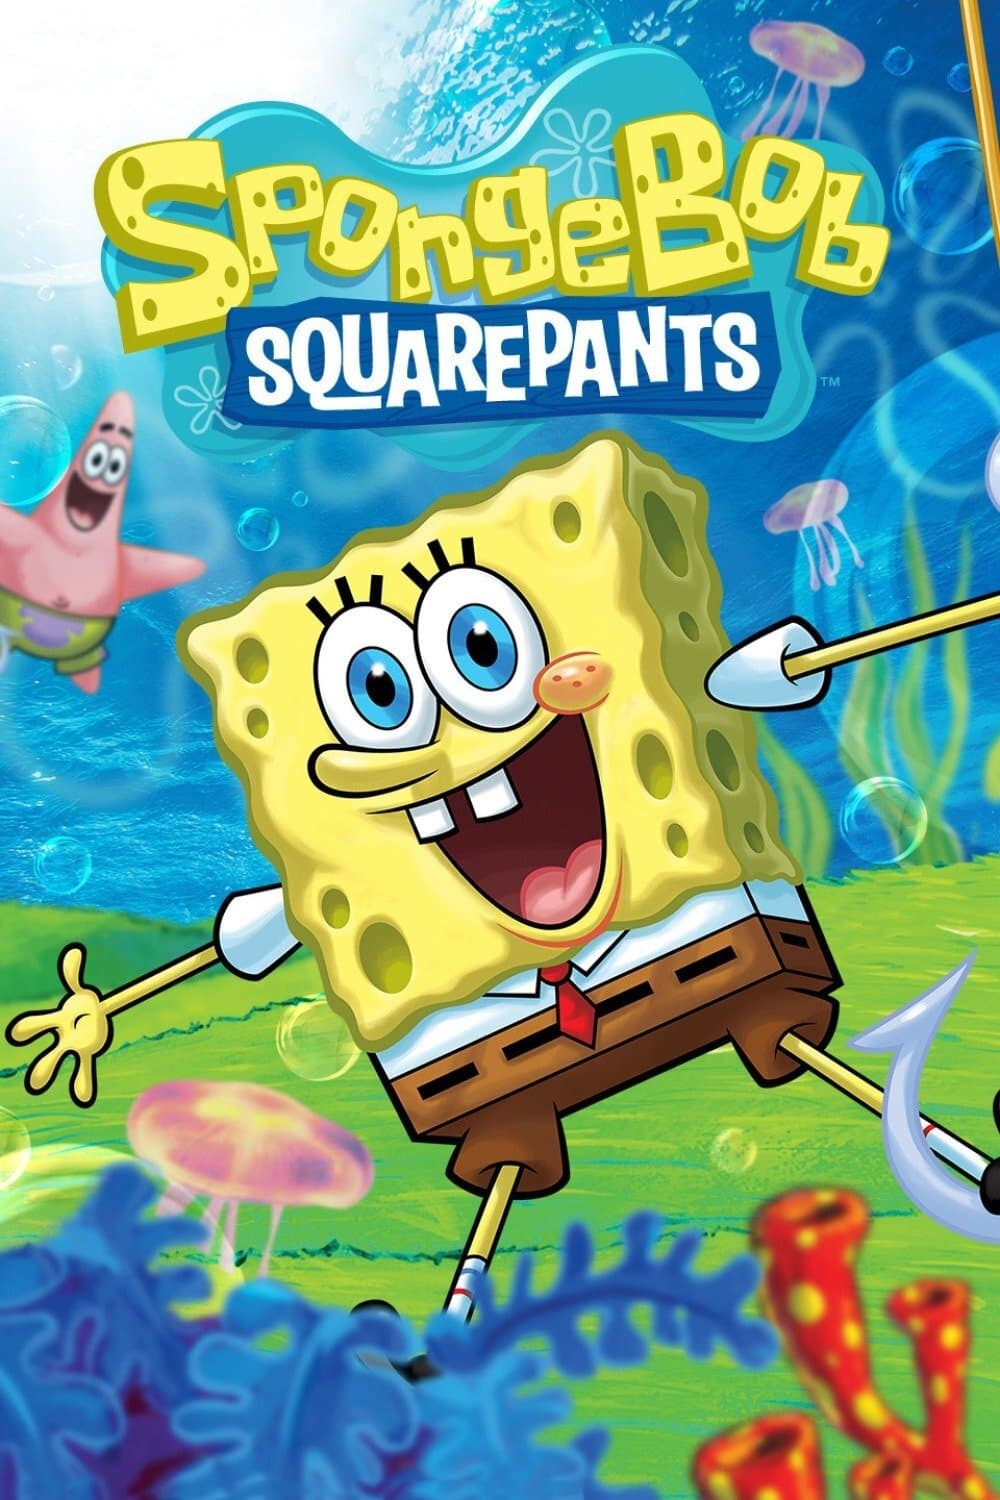 SpongeBob SquarePants TV Shows About Speculative Fiction